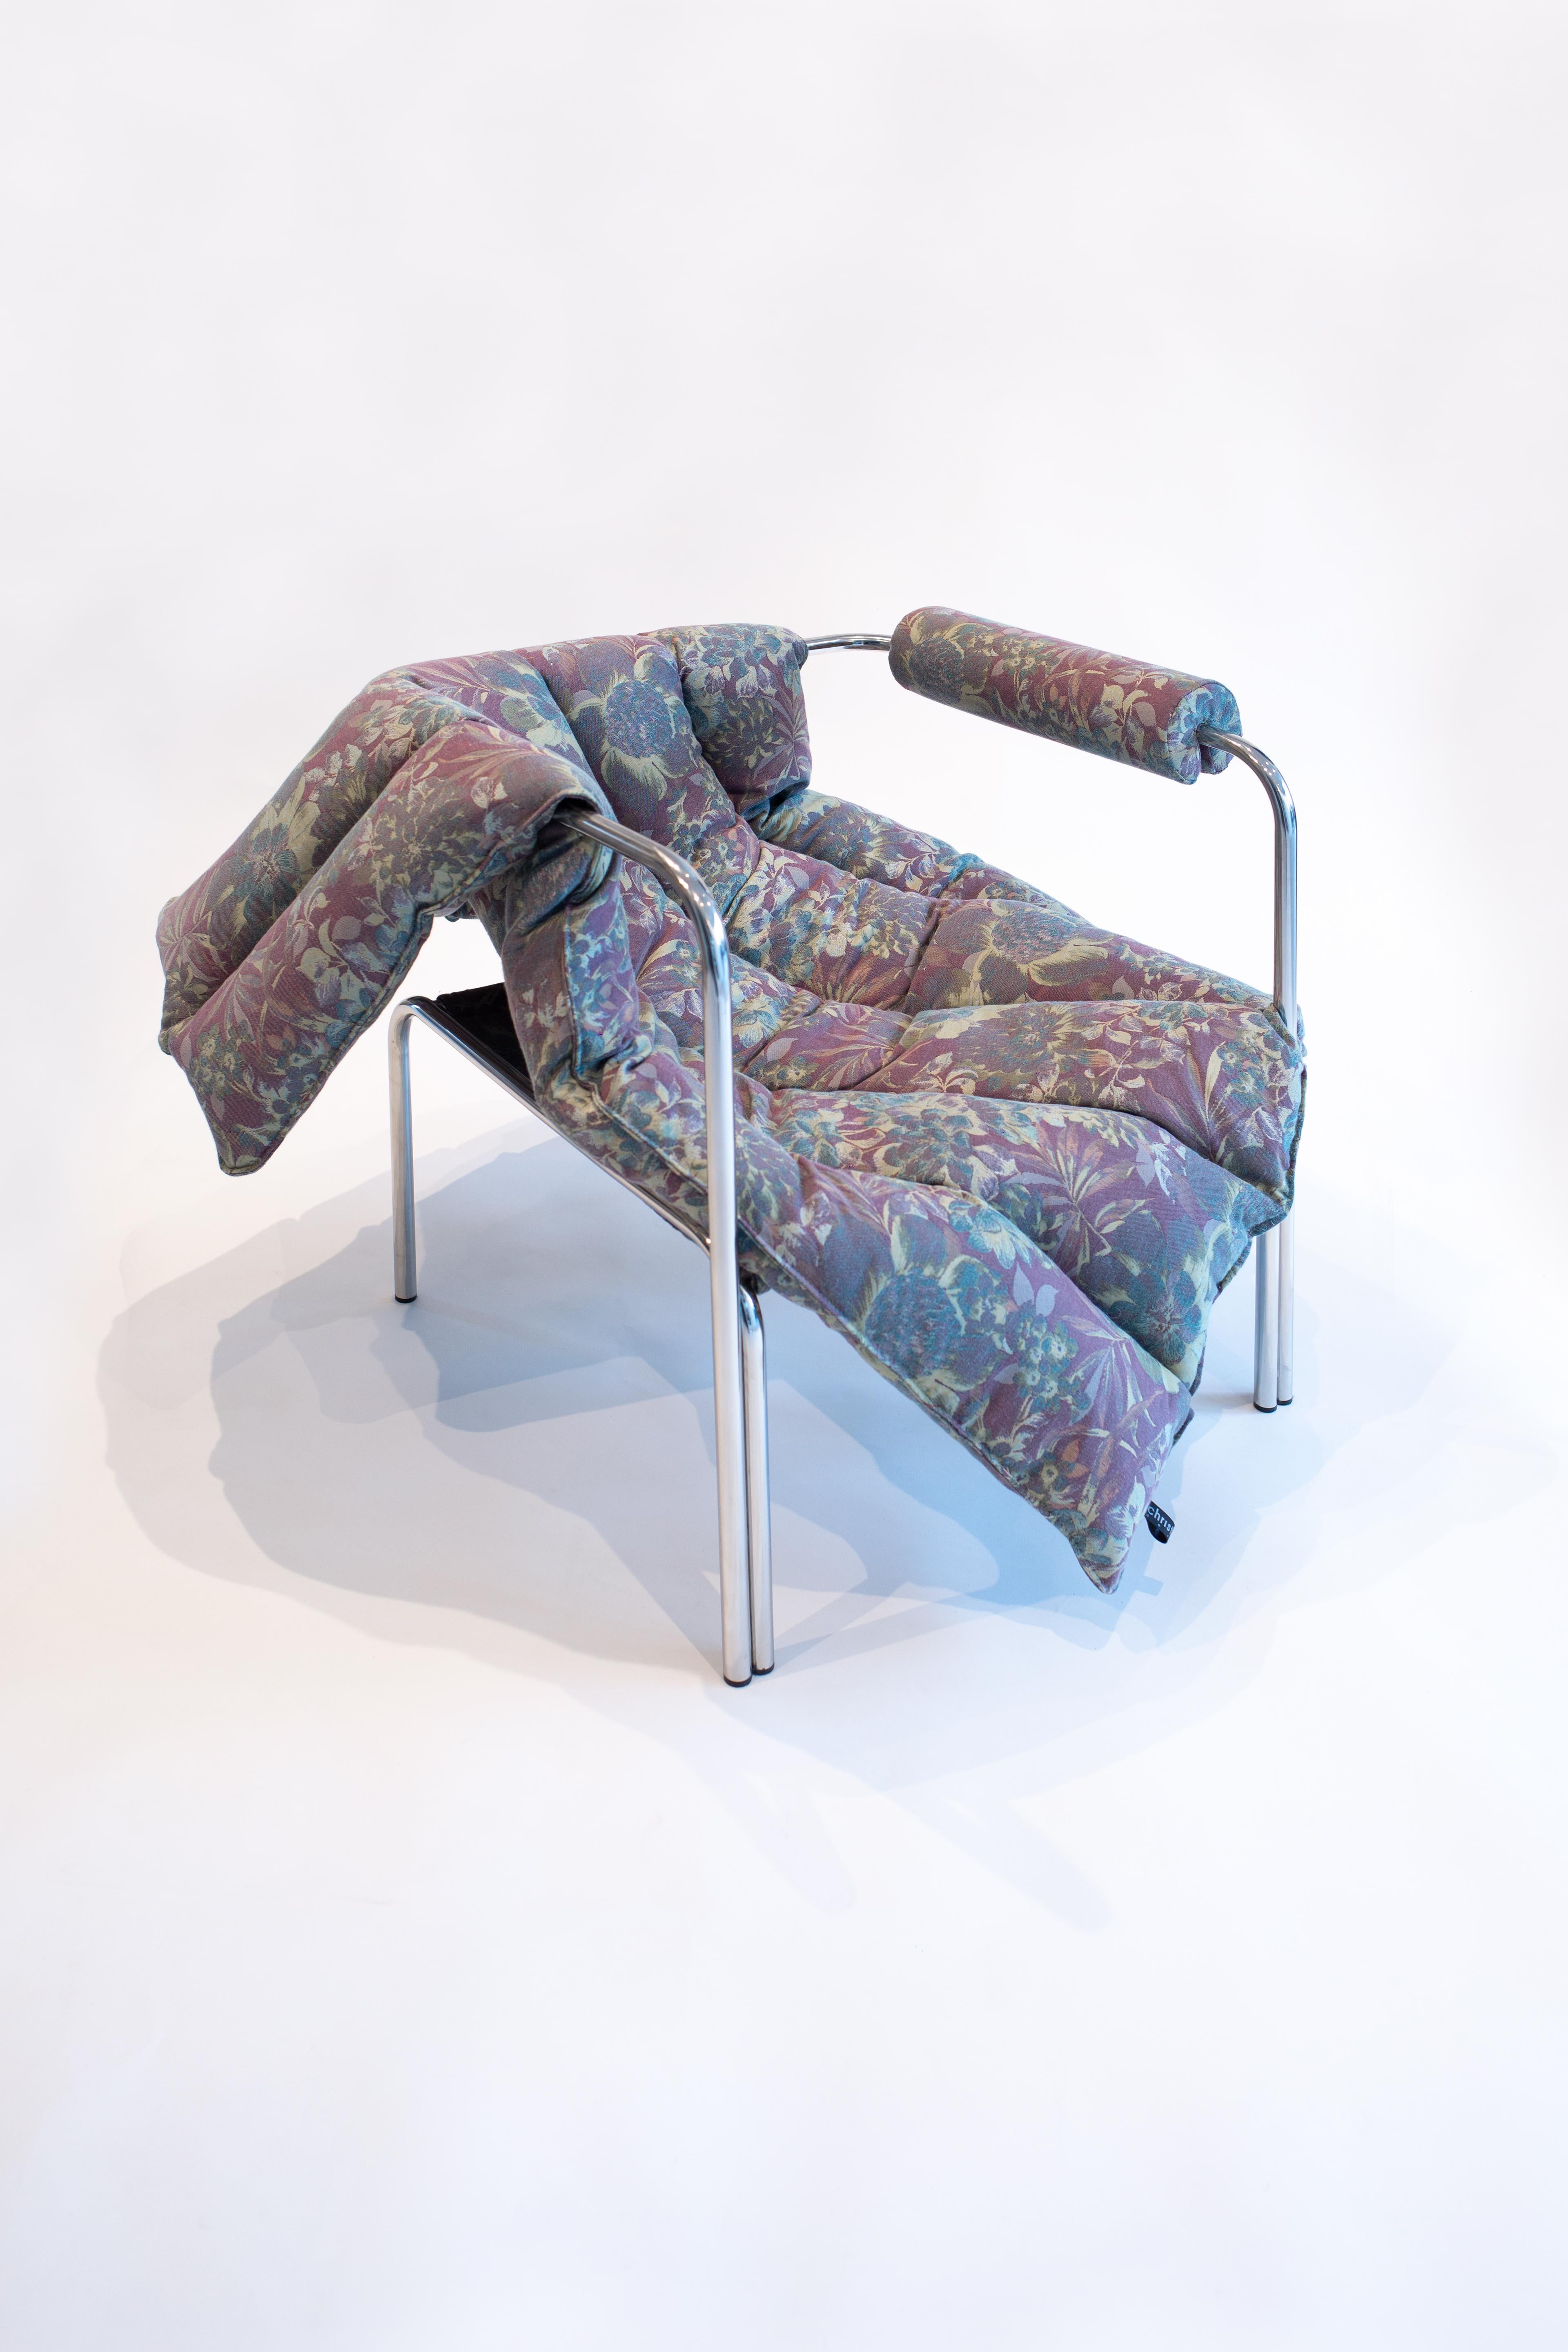 Européen ELEGG fauteuil tubulaire en acier inoxydable avec drapé matelassé à motifs floraux  en vente